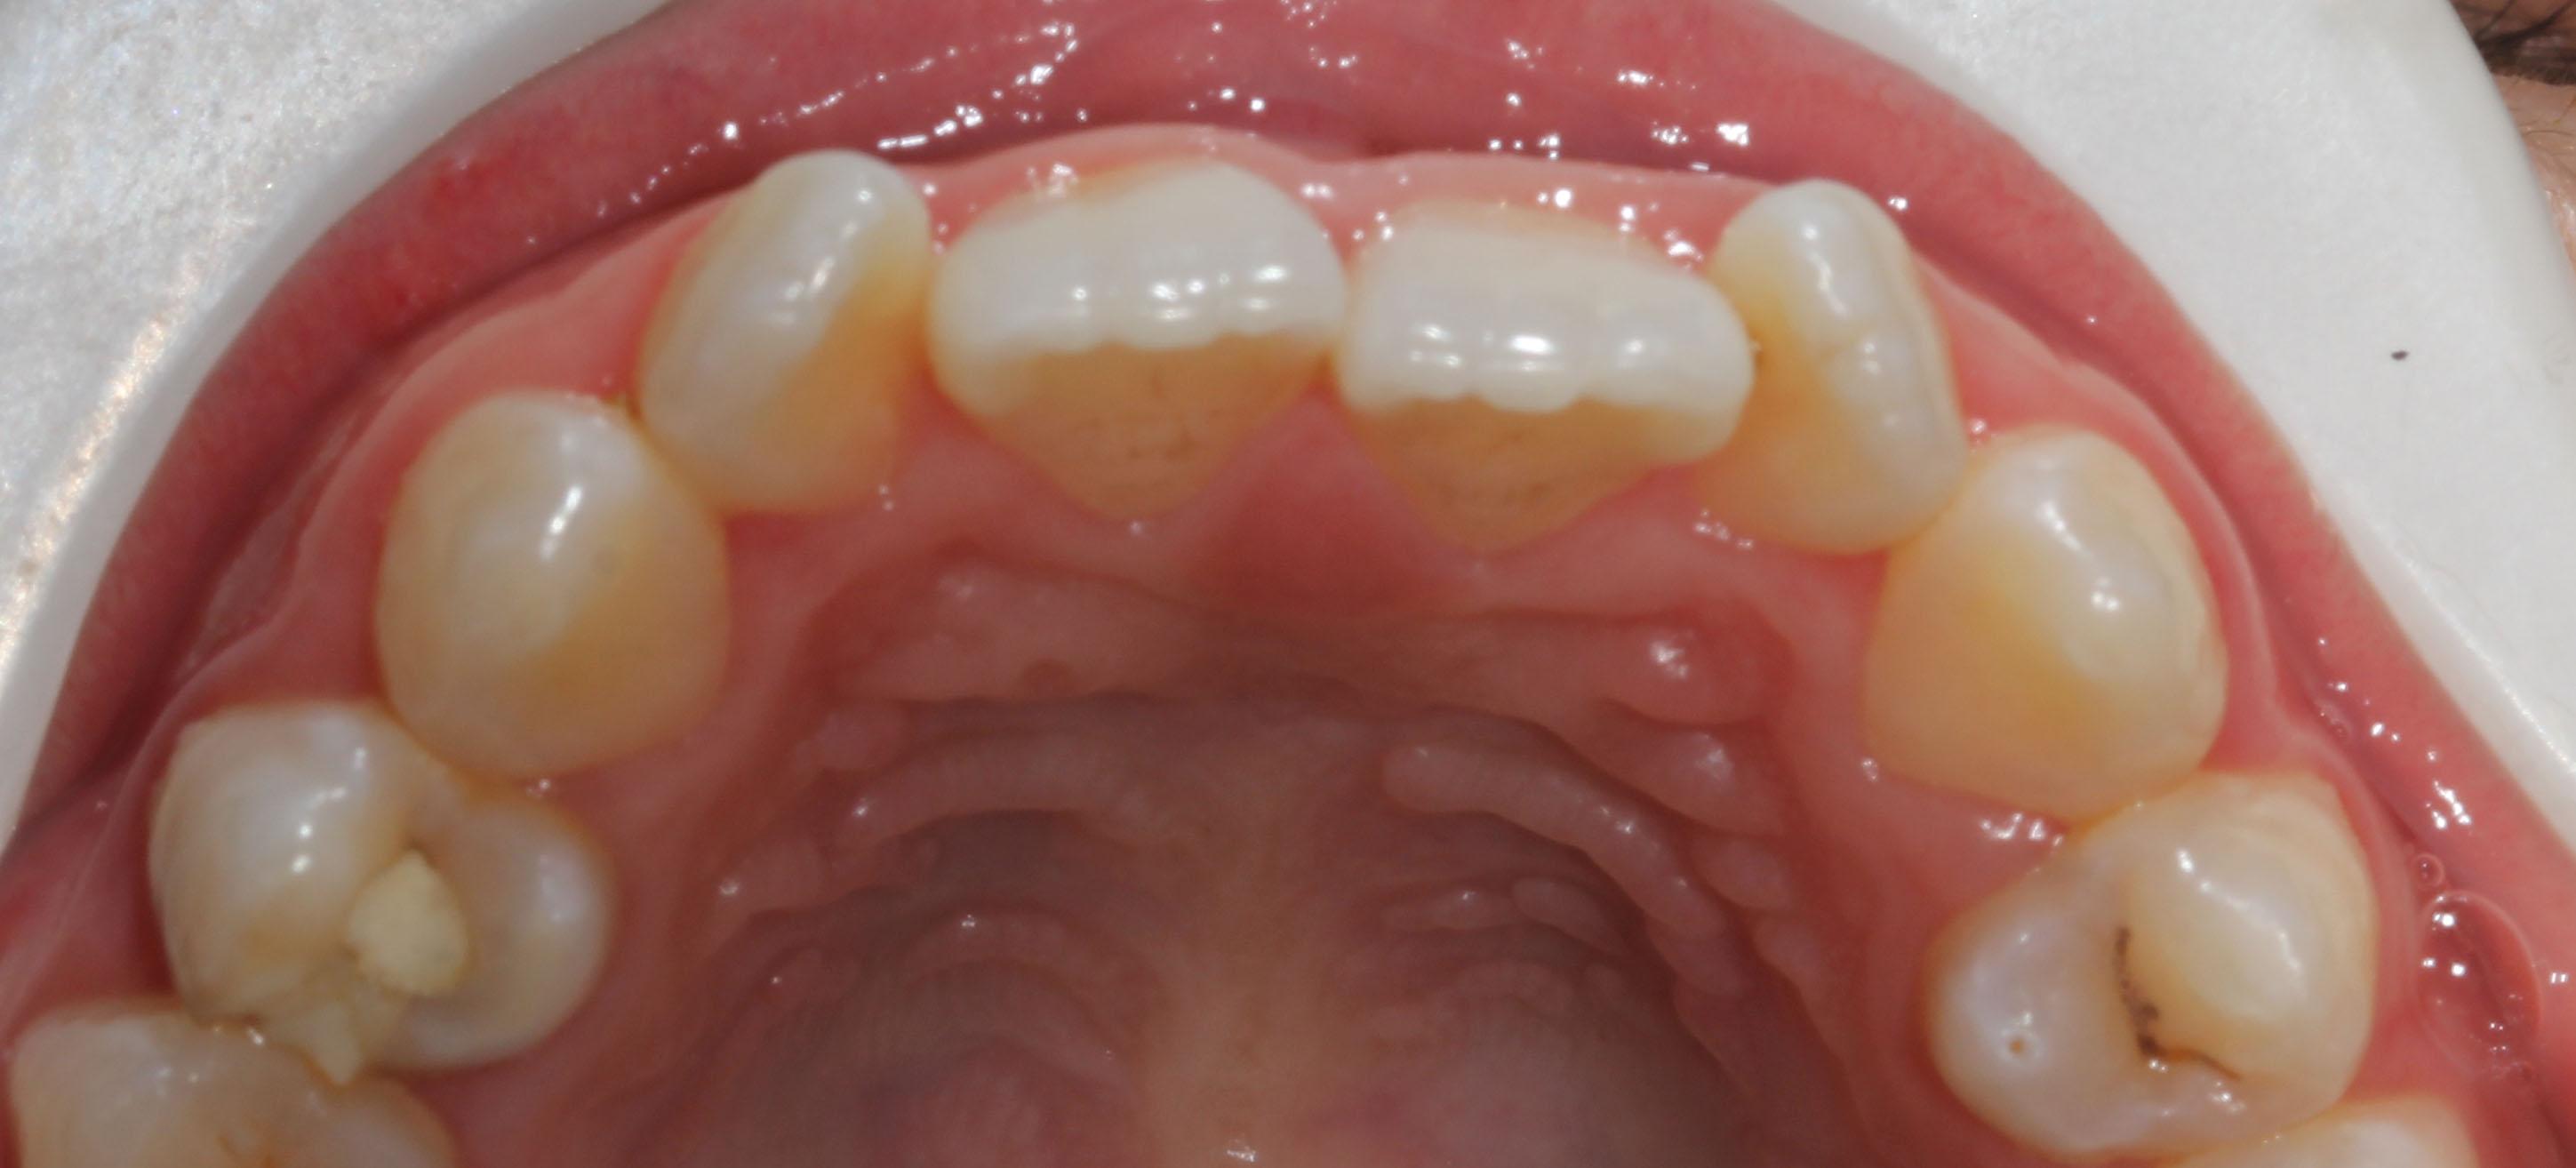 骨性龅牙侧面图片